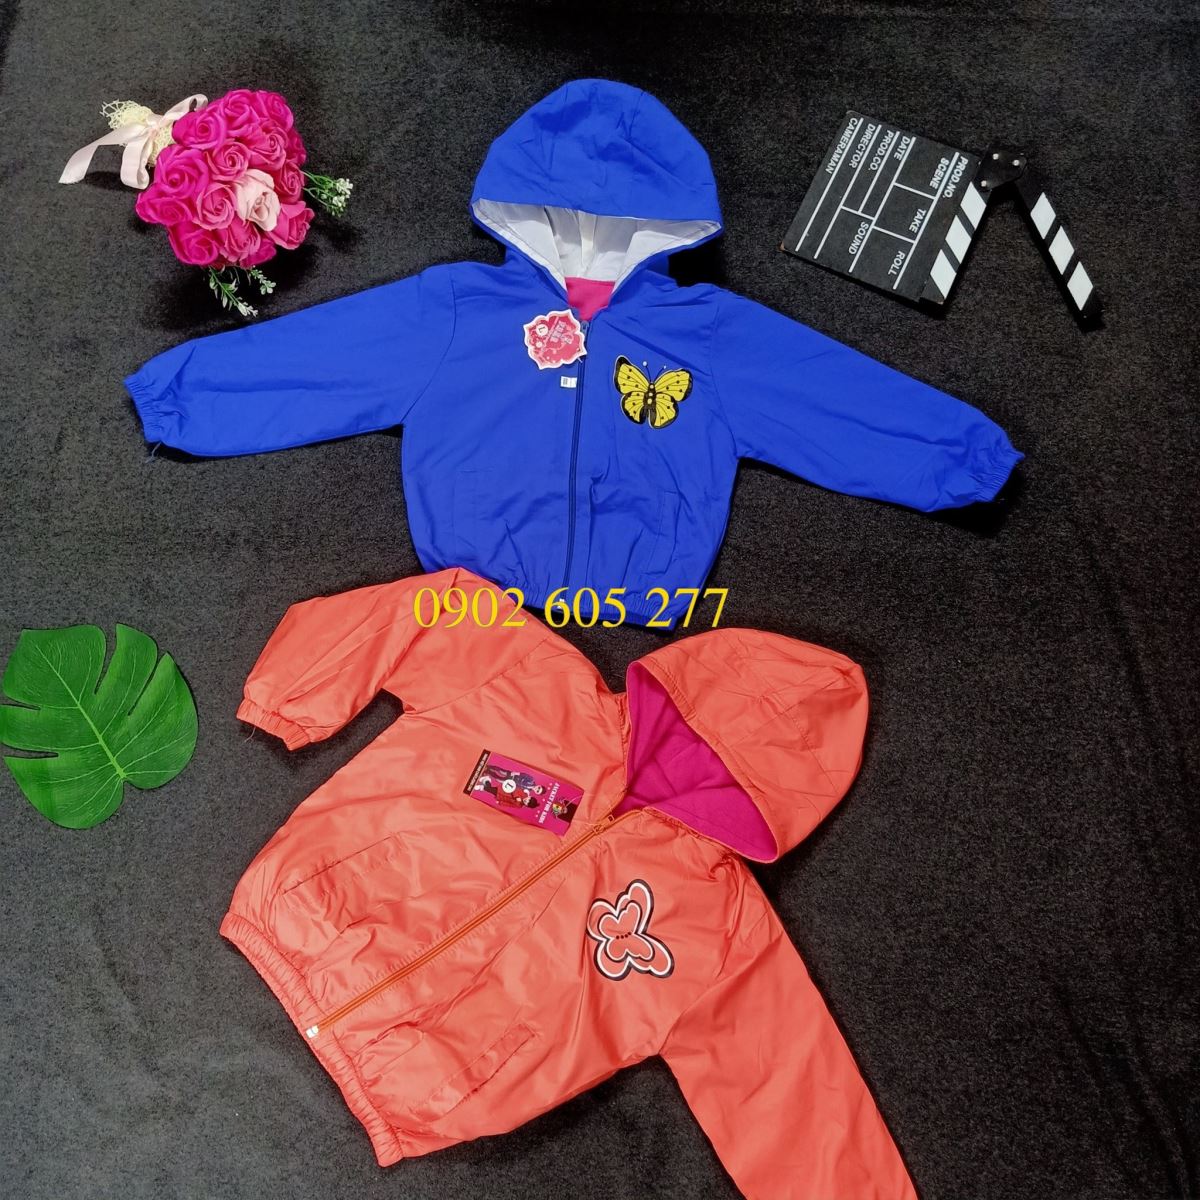 Tuyển sỉ các mẫu áo khoác gió từ thiện trẻ em ở KonTum